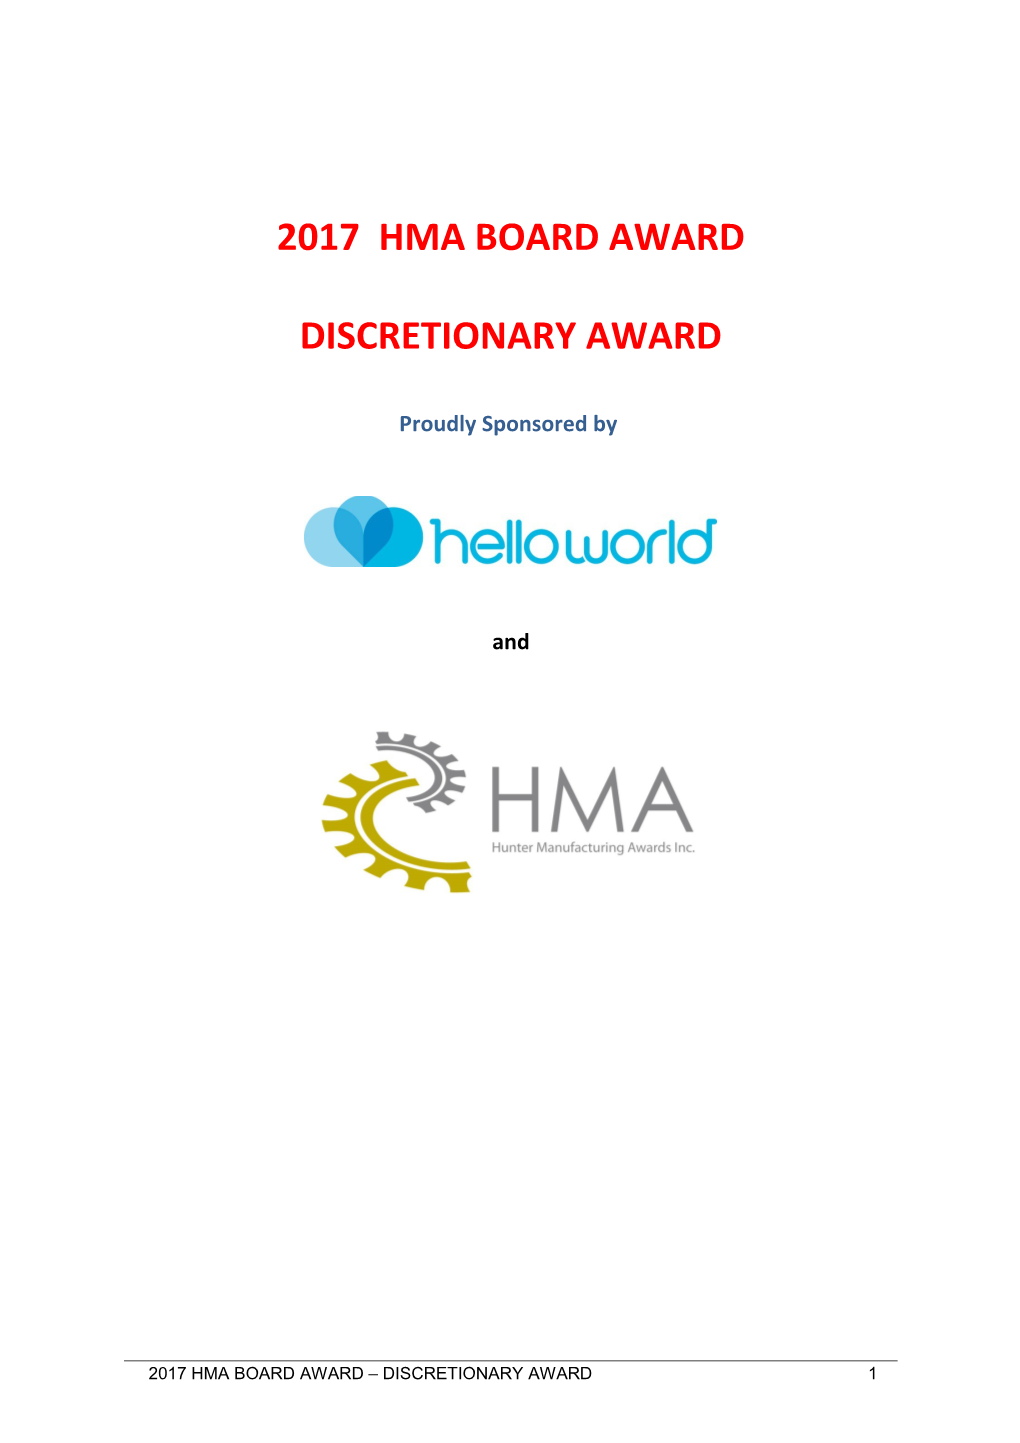 Board Award - Discretionary Award